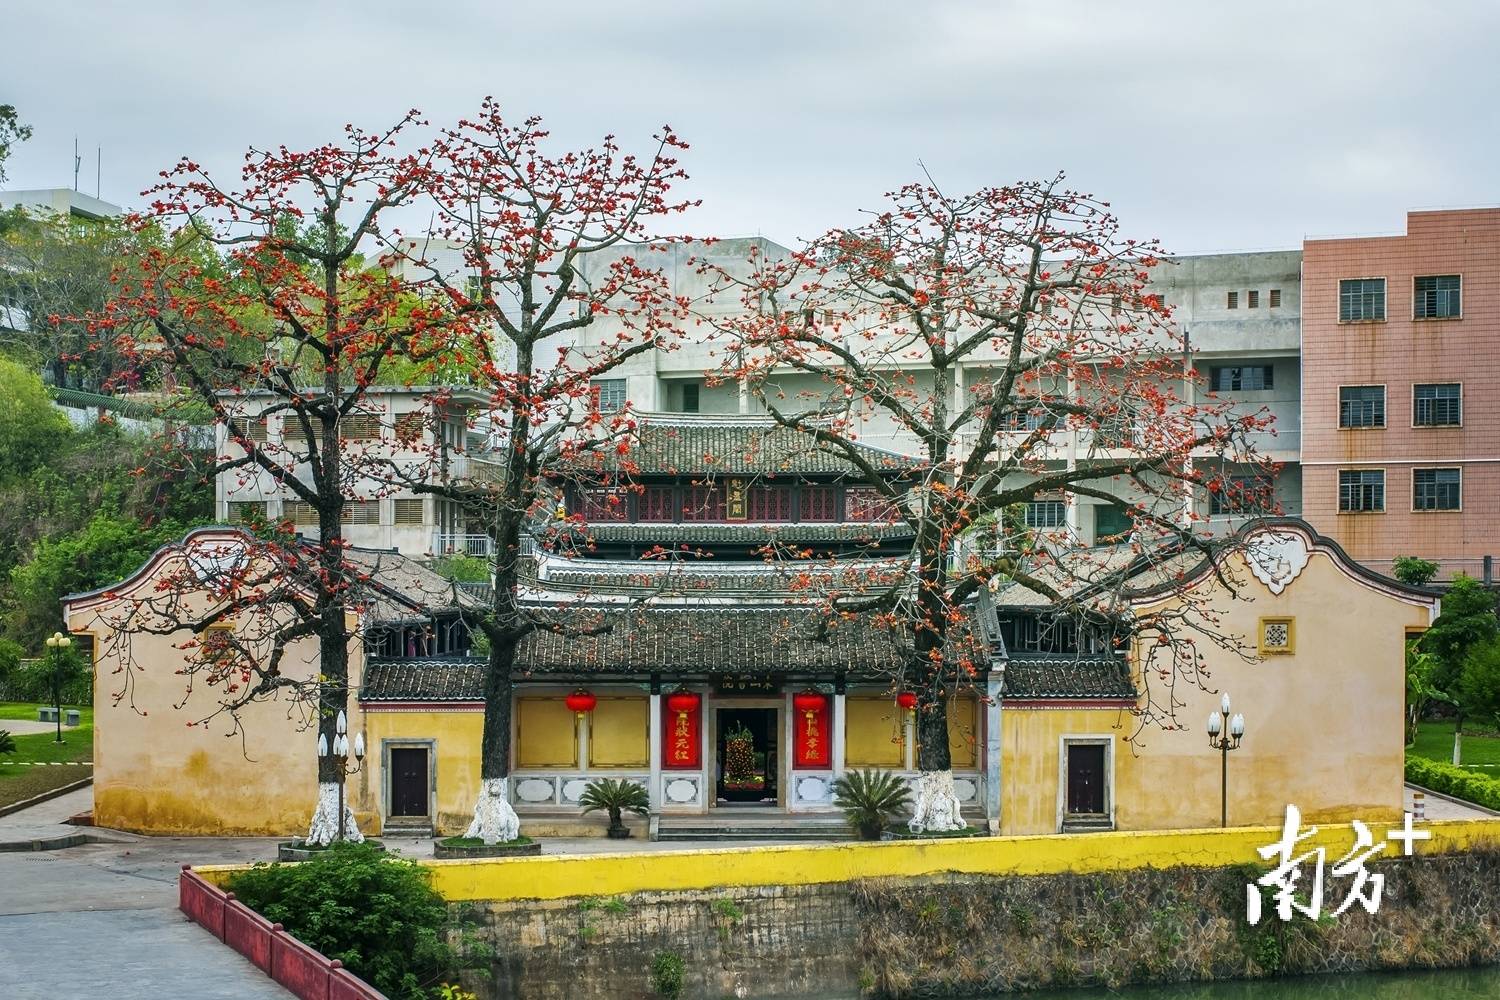 我的书院
:探访梅州最古老的书院之一，浓缩了当地的教育发展史|围屋古韵 客家瑰宝①